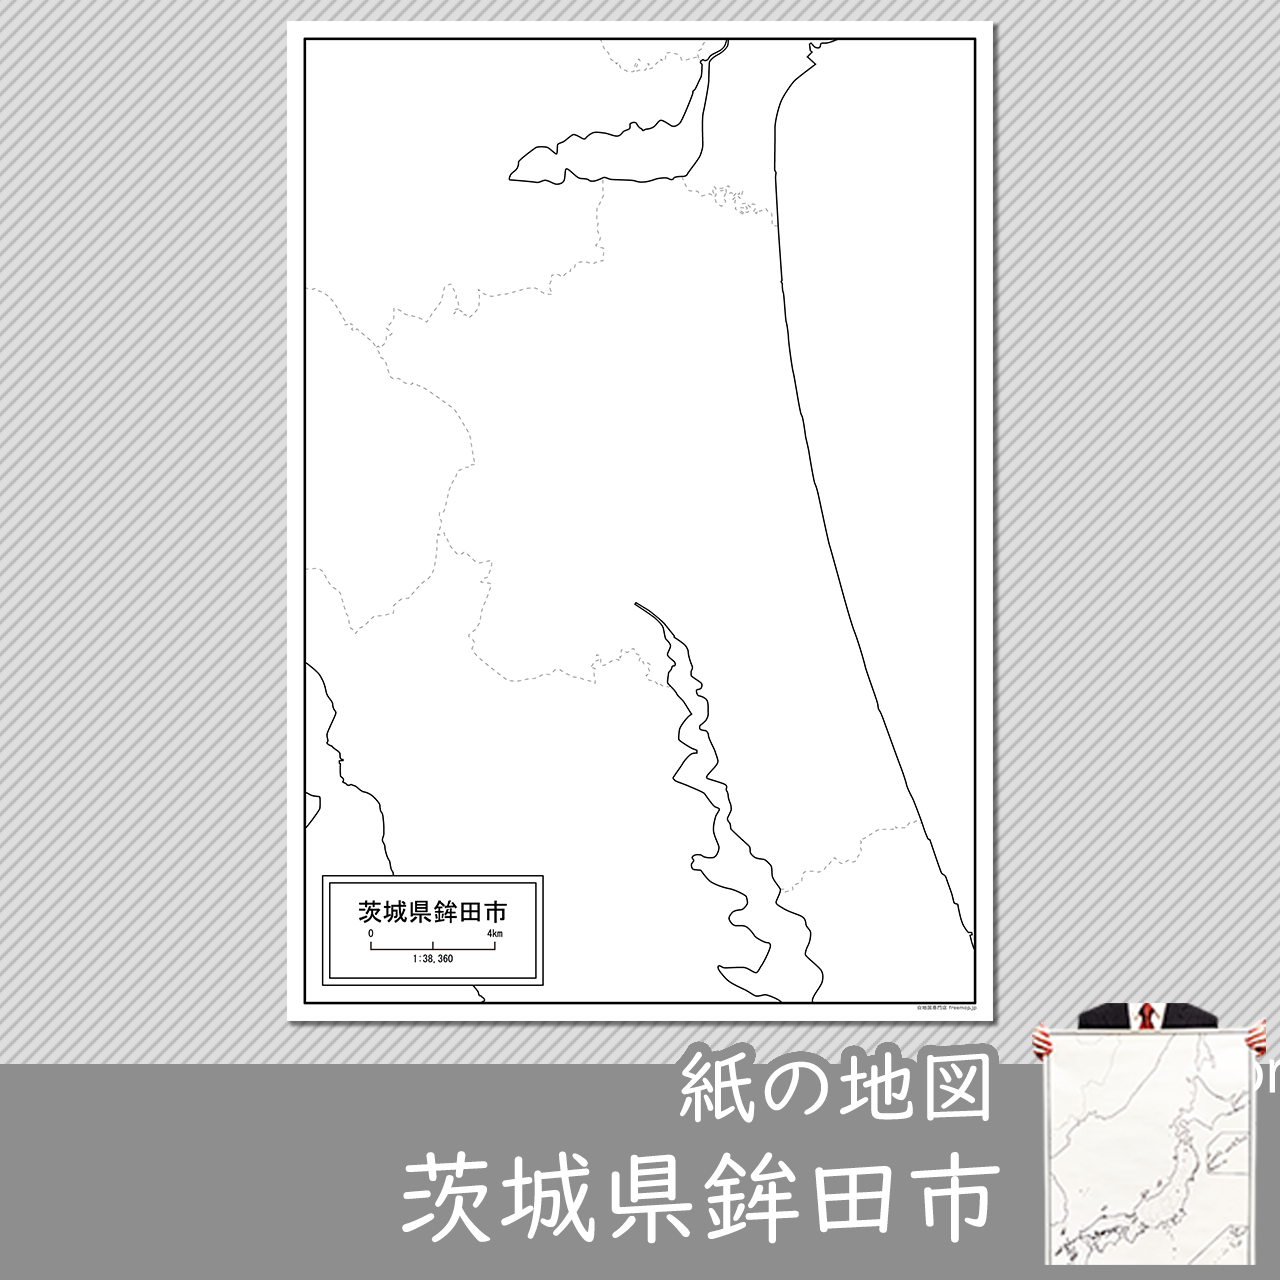 鉾田市の紙の白地図のサムネイル